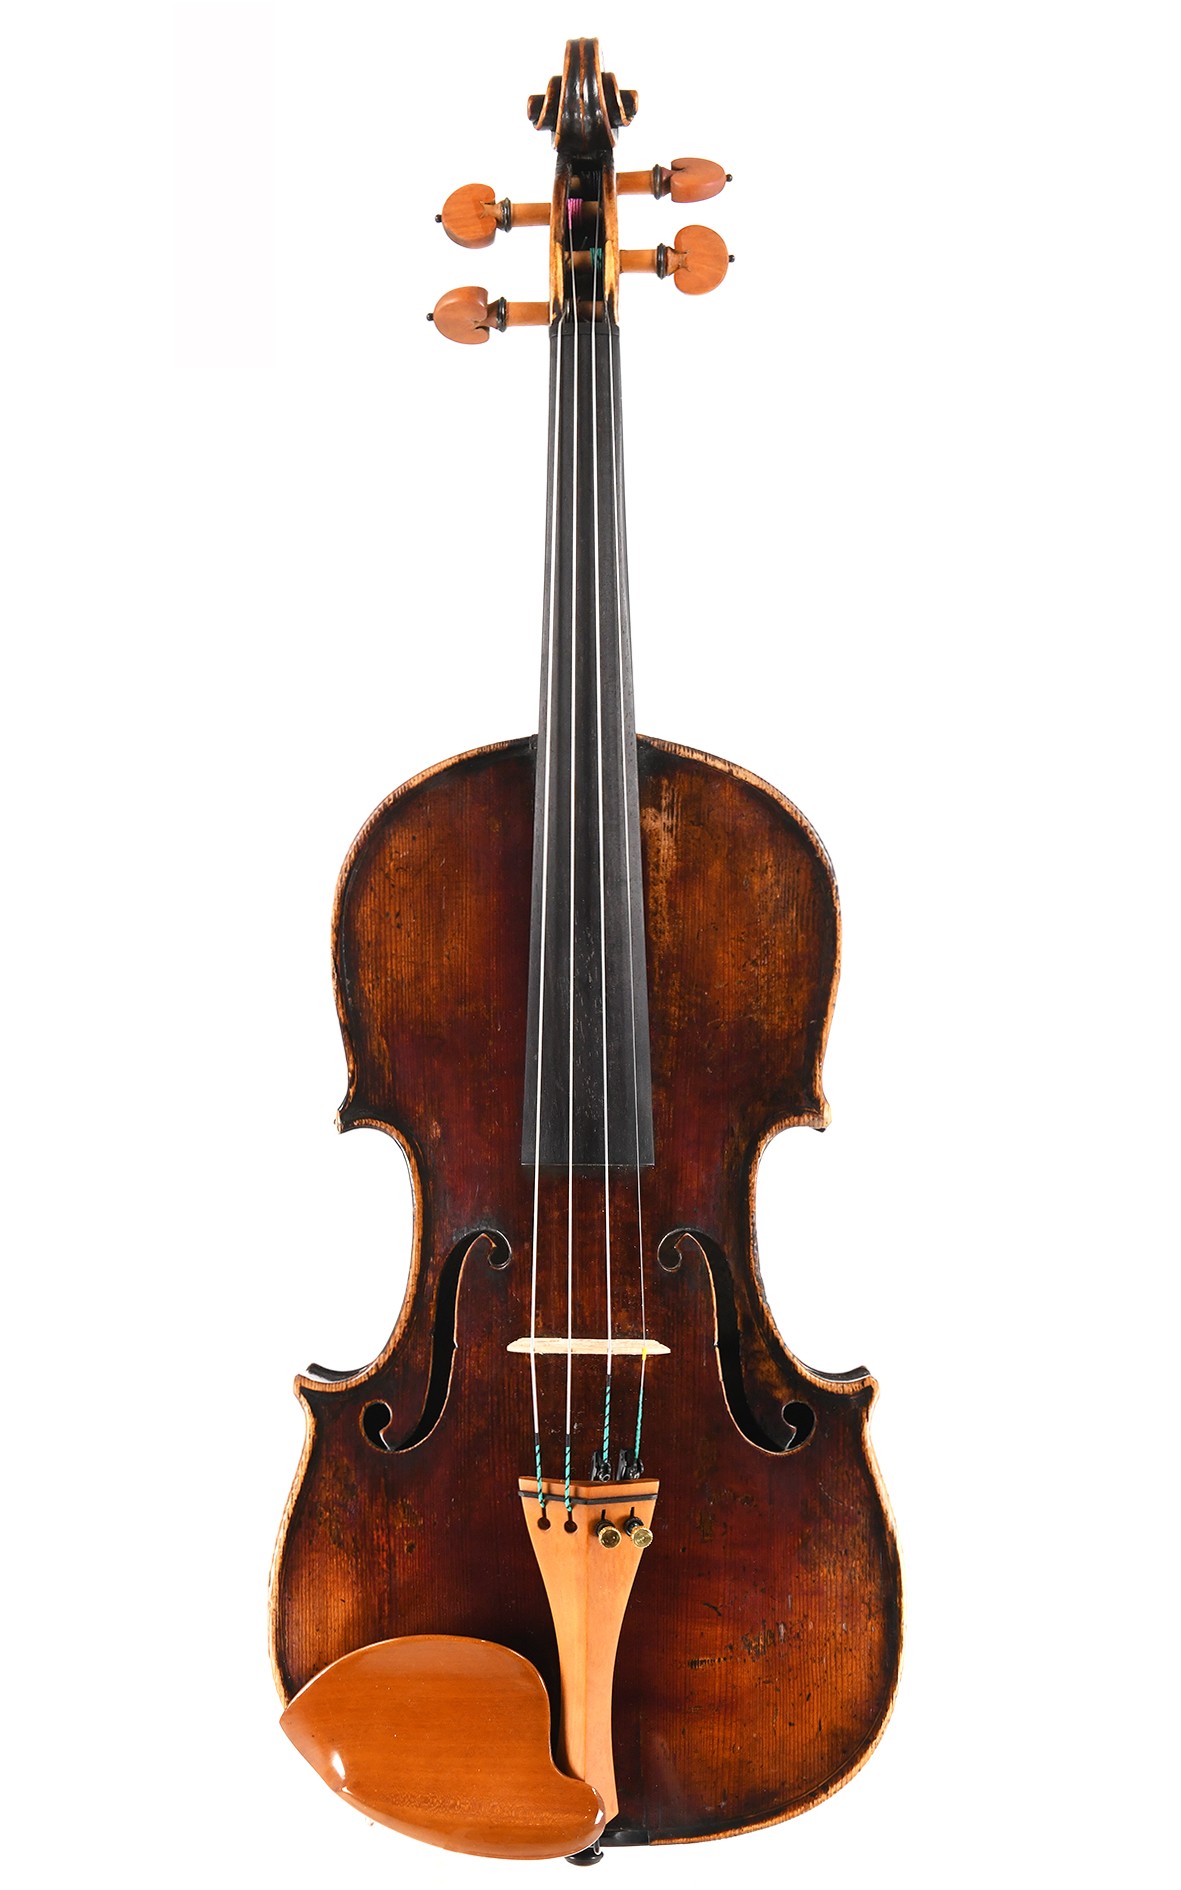 Intéressant violon de maître ancien, vers 1850 - Allemagne du Nord